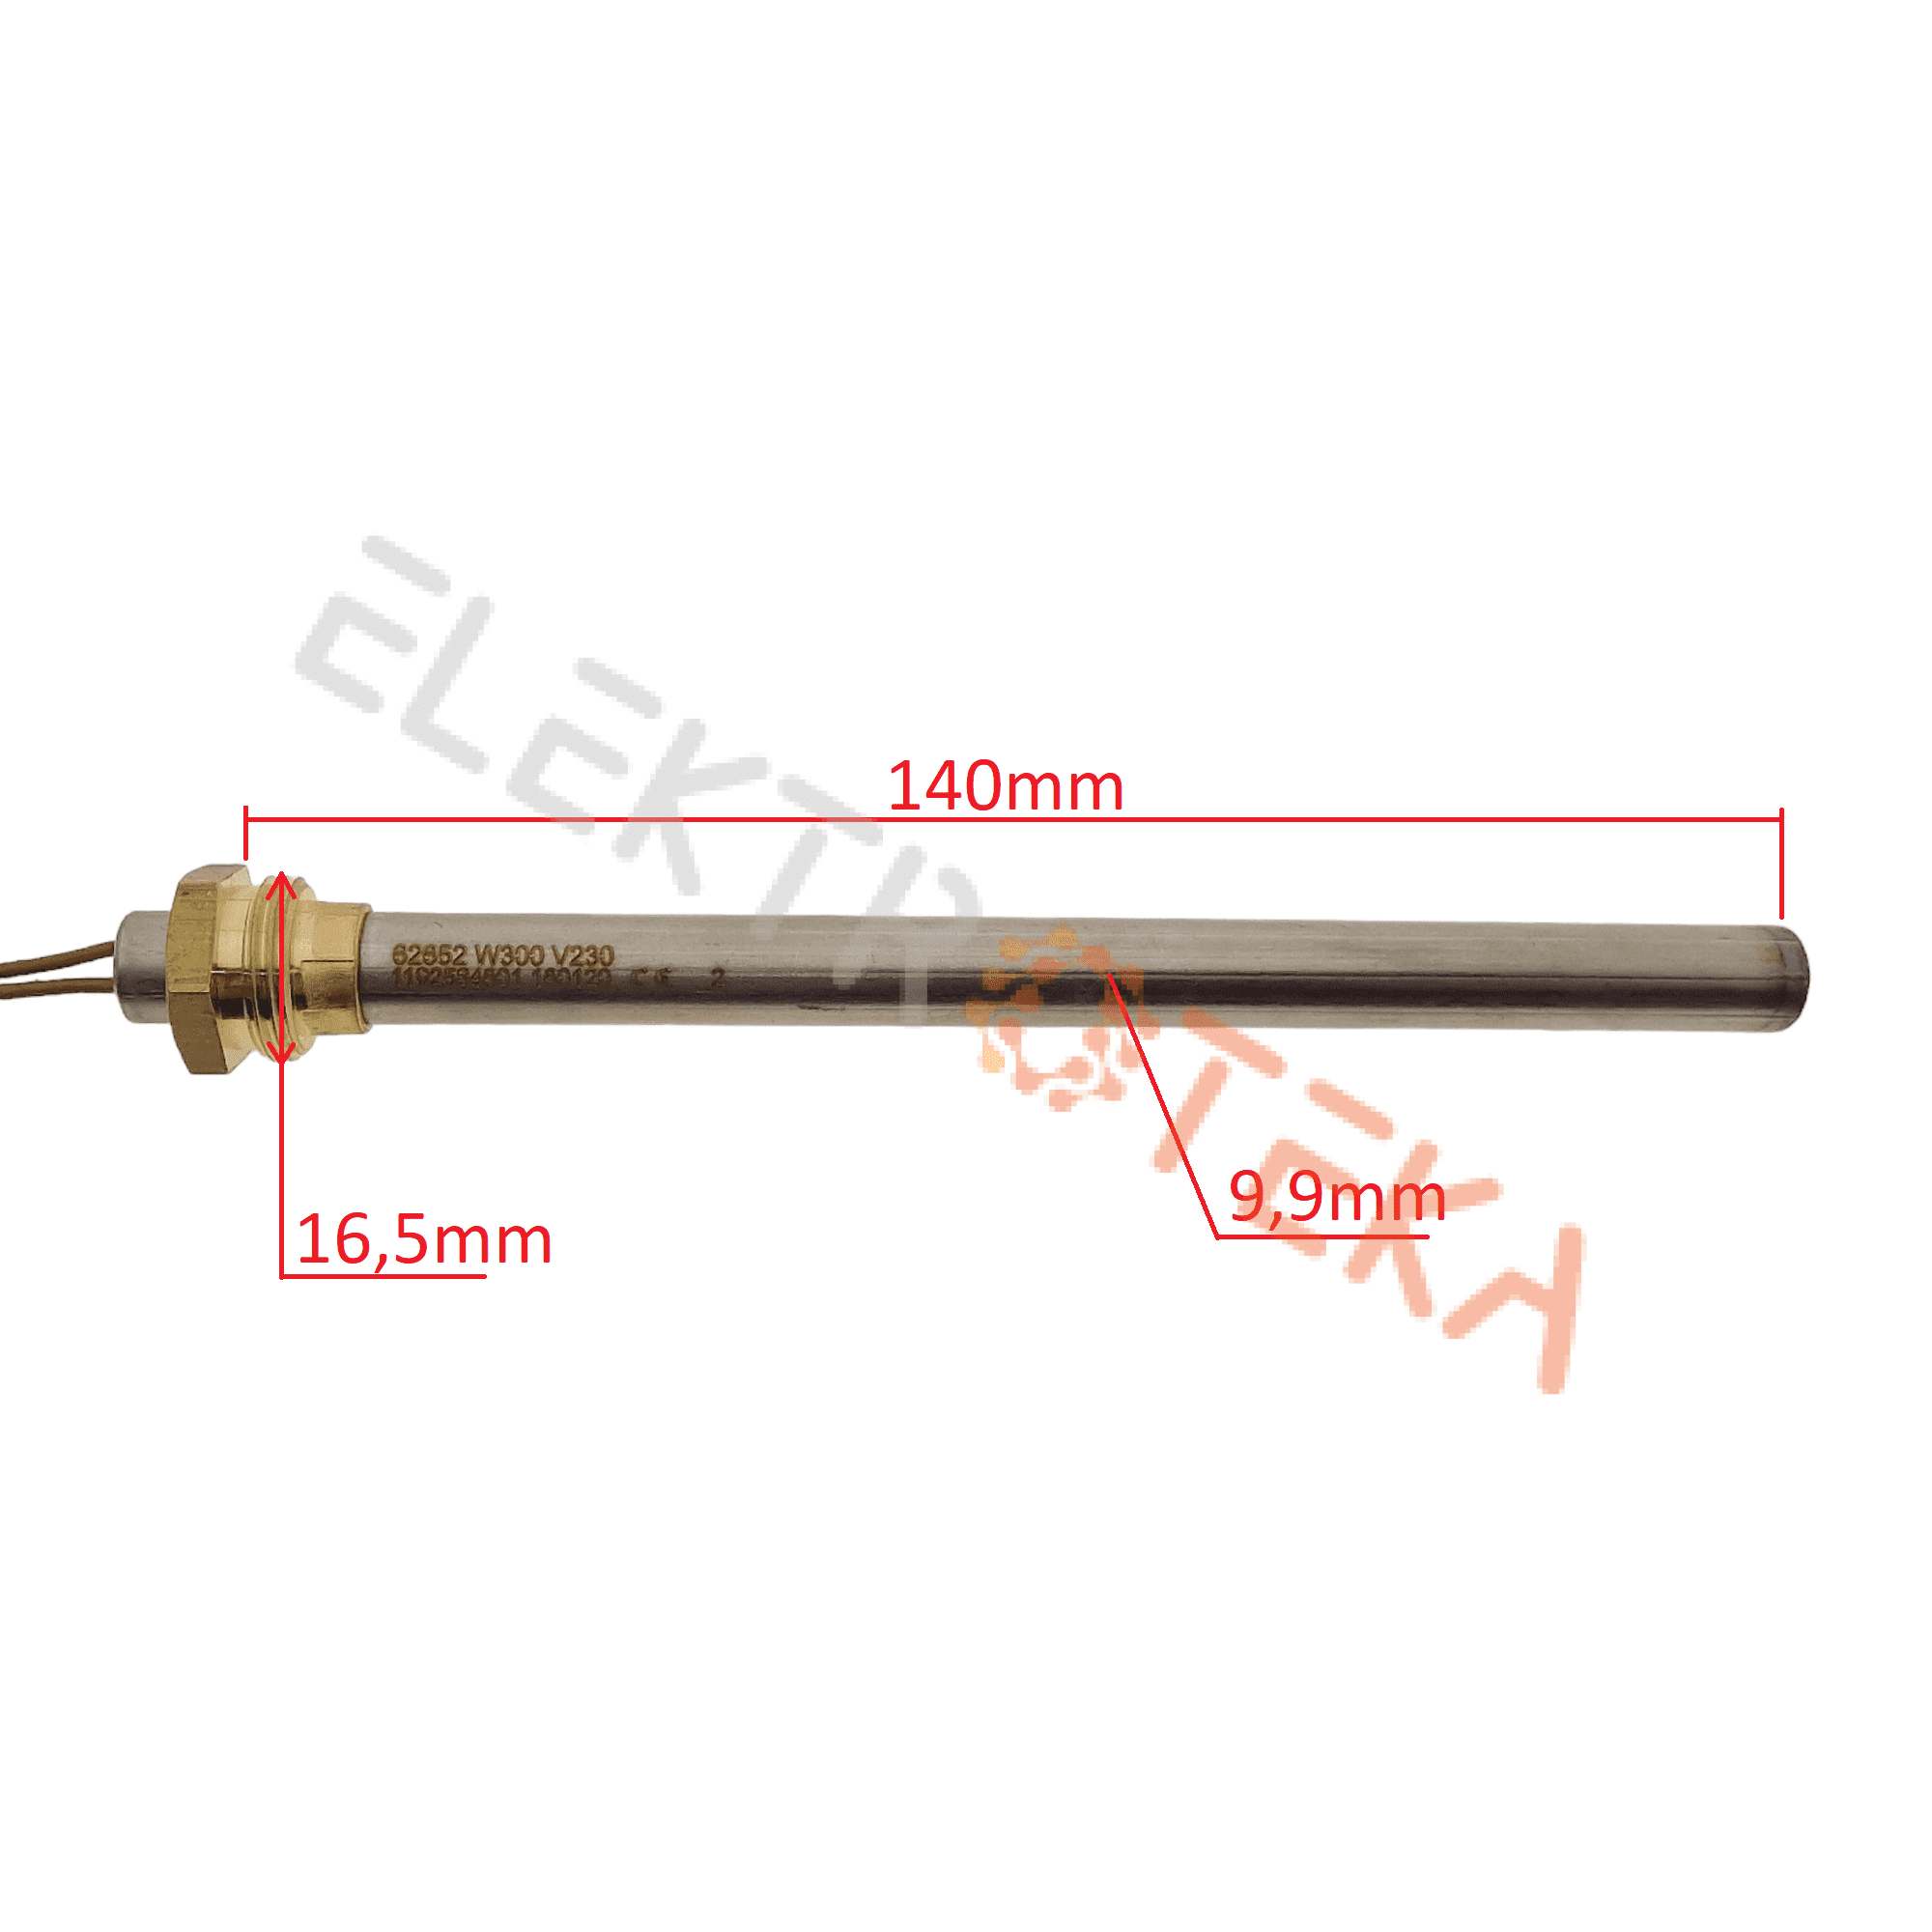 Granulinės krosnelės kaitinimo elementas diametras 9,9mm ilgis 140mm 300W